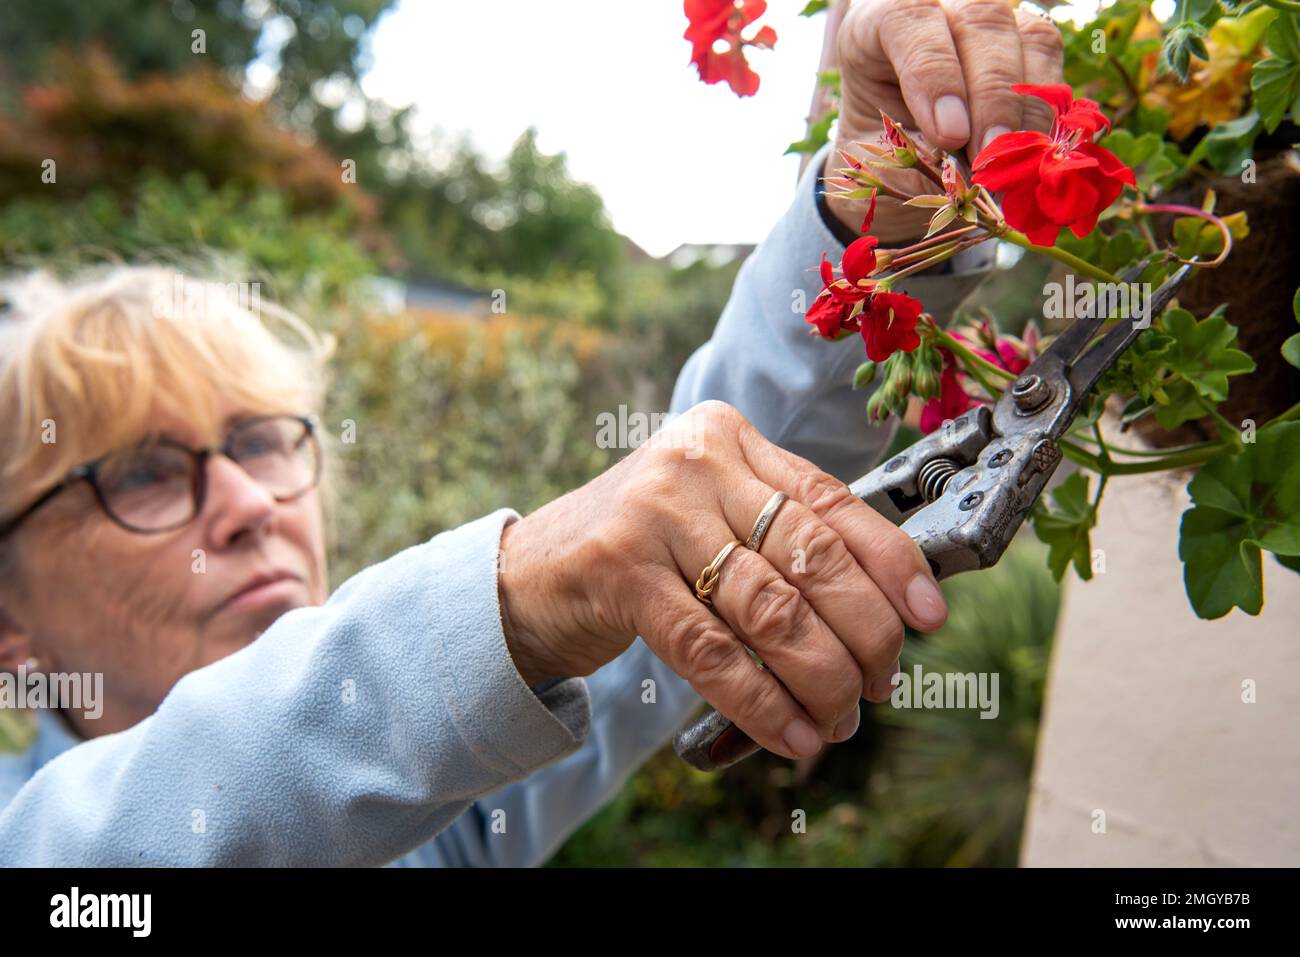 Mujer mayor desadheading flores rojas y rosadas de geranios plantados en cesta colgante en jardín suburbano inglés en verano Foto de stock